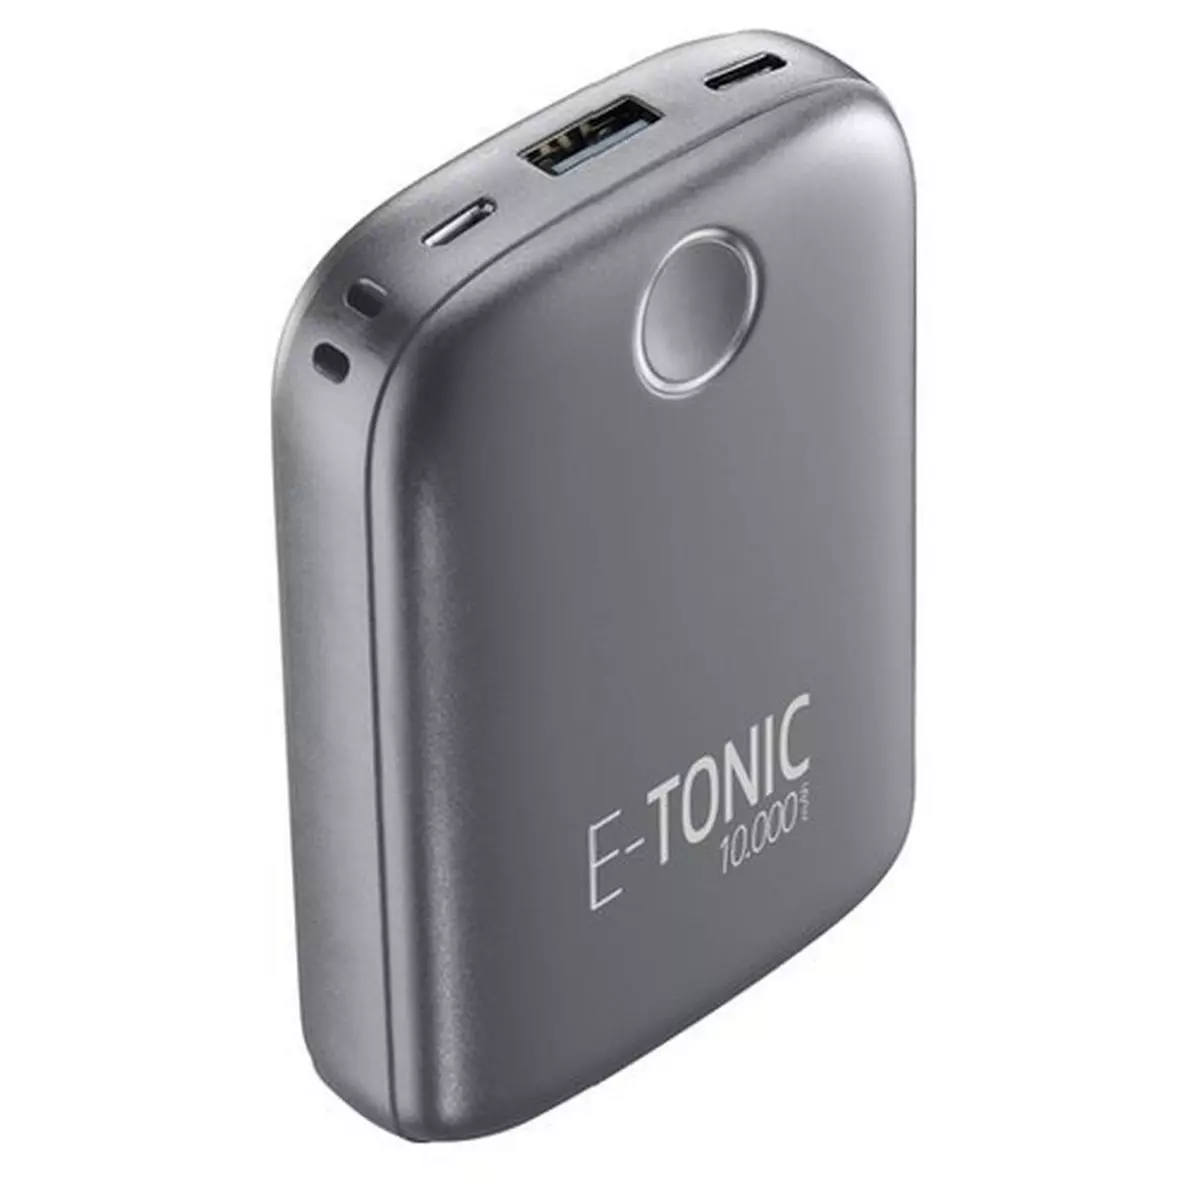 CELLULARLINE Batterie de secours E-Tonic - Noir